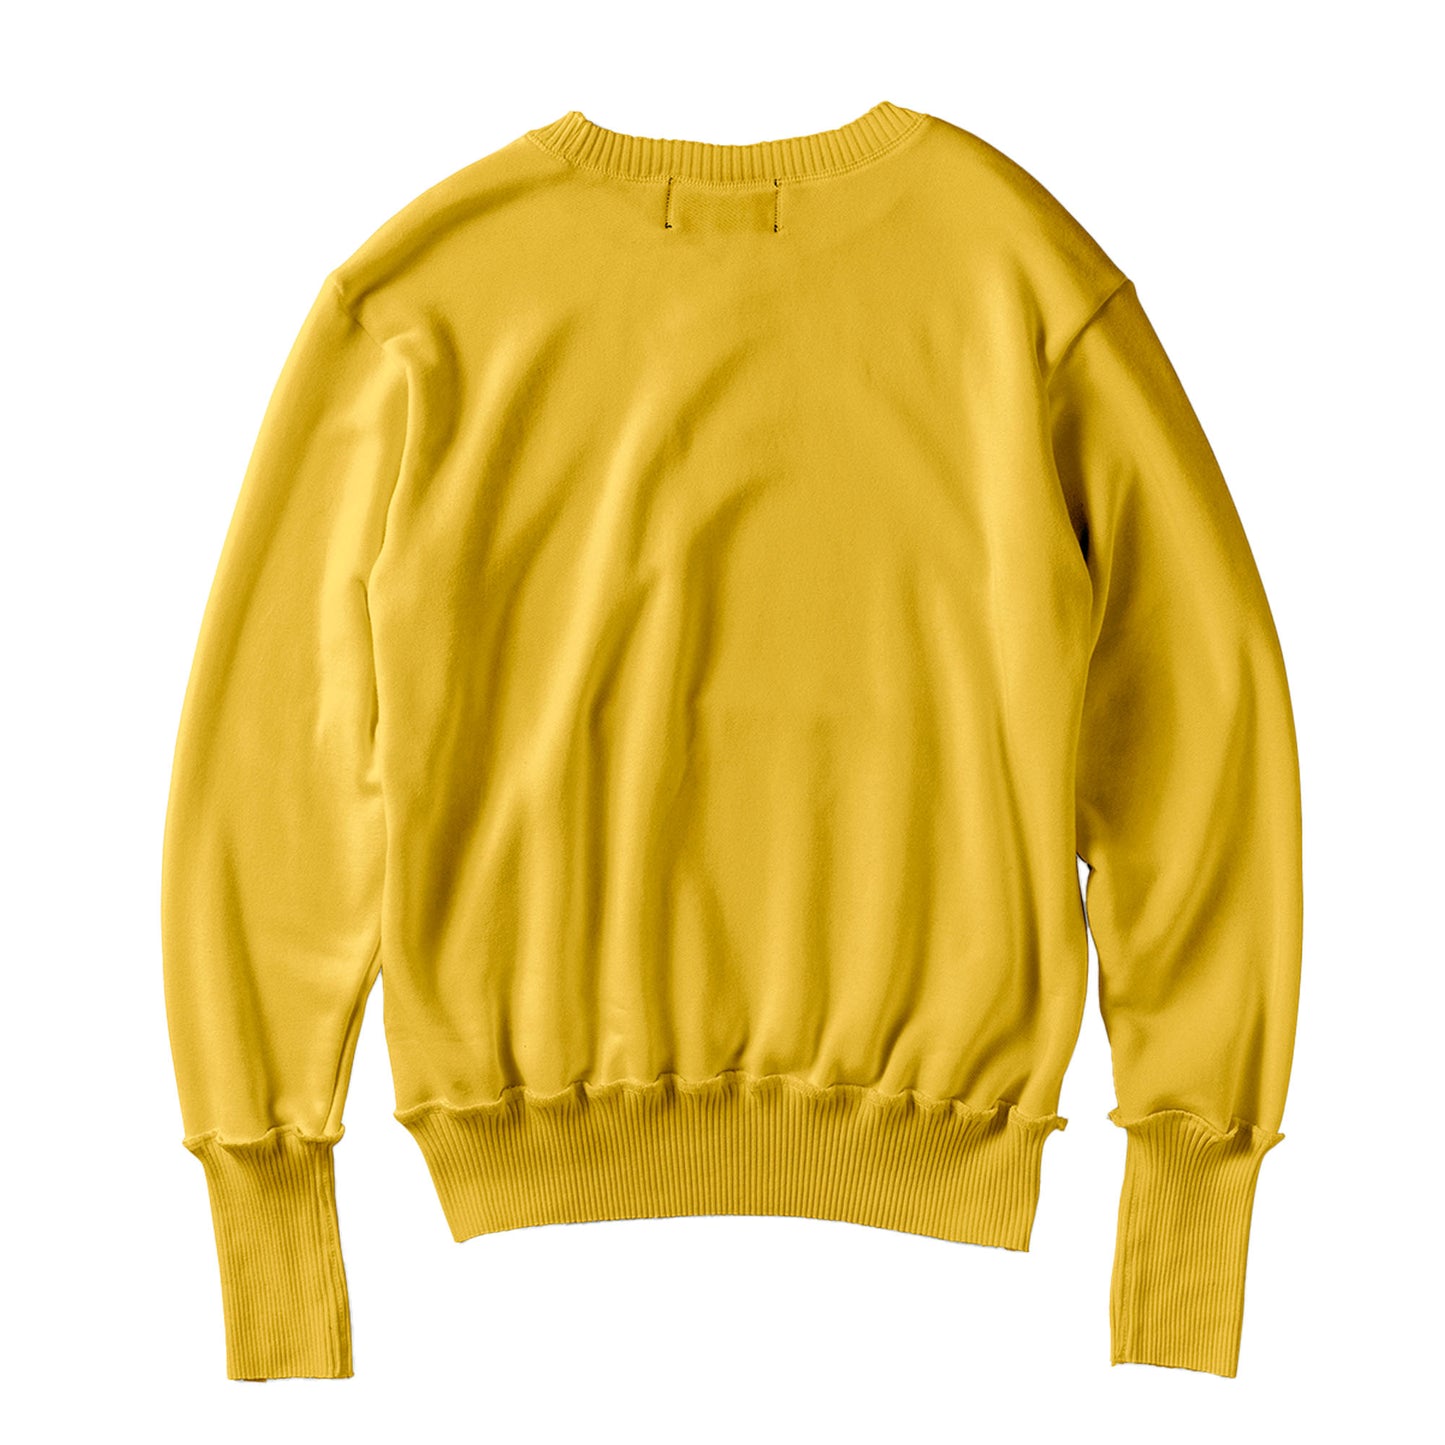 Pocket Crew Neck Sweat Shirts / Vintage Yellow(ポケット クルーネック スウェットシャツ/ヴィンテージイエロー)